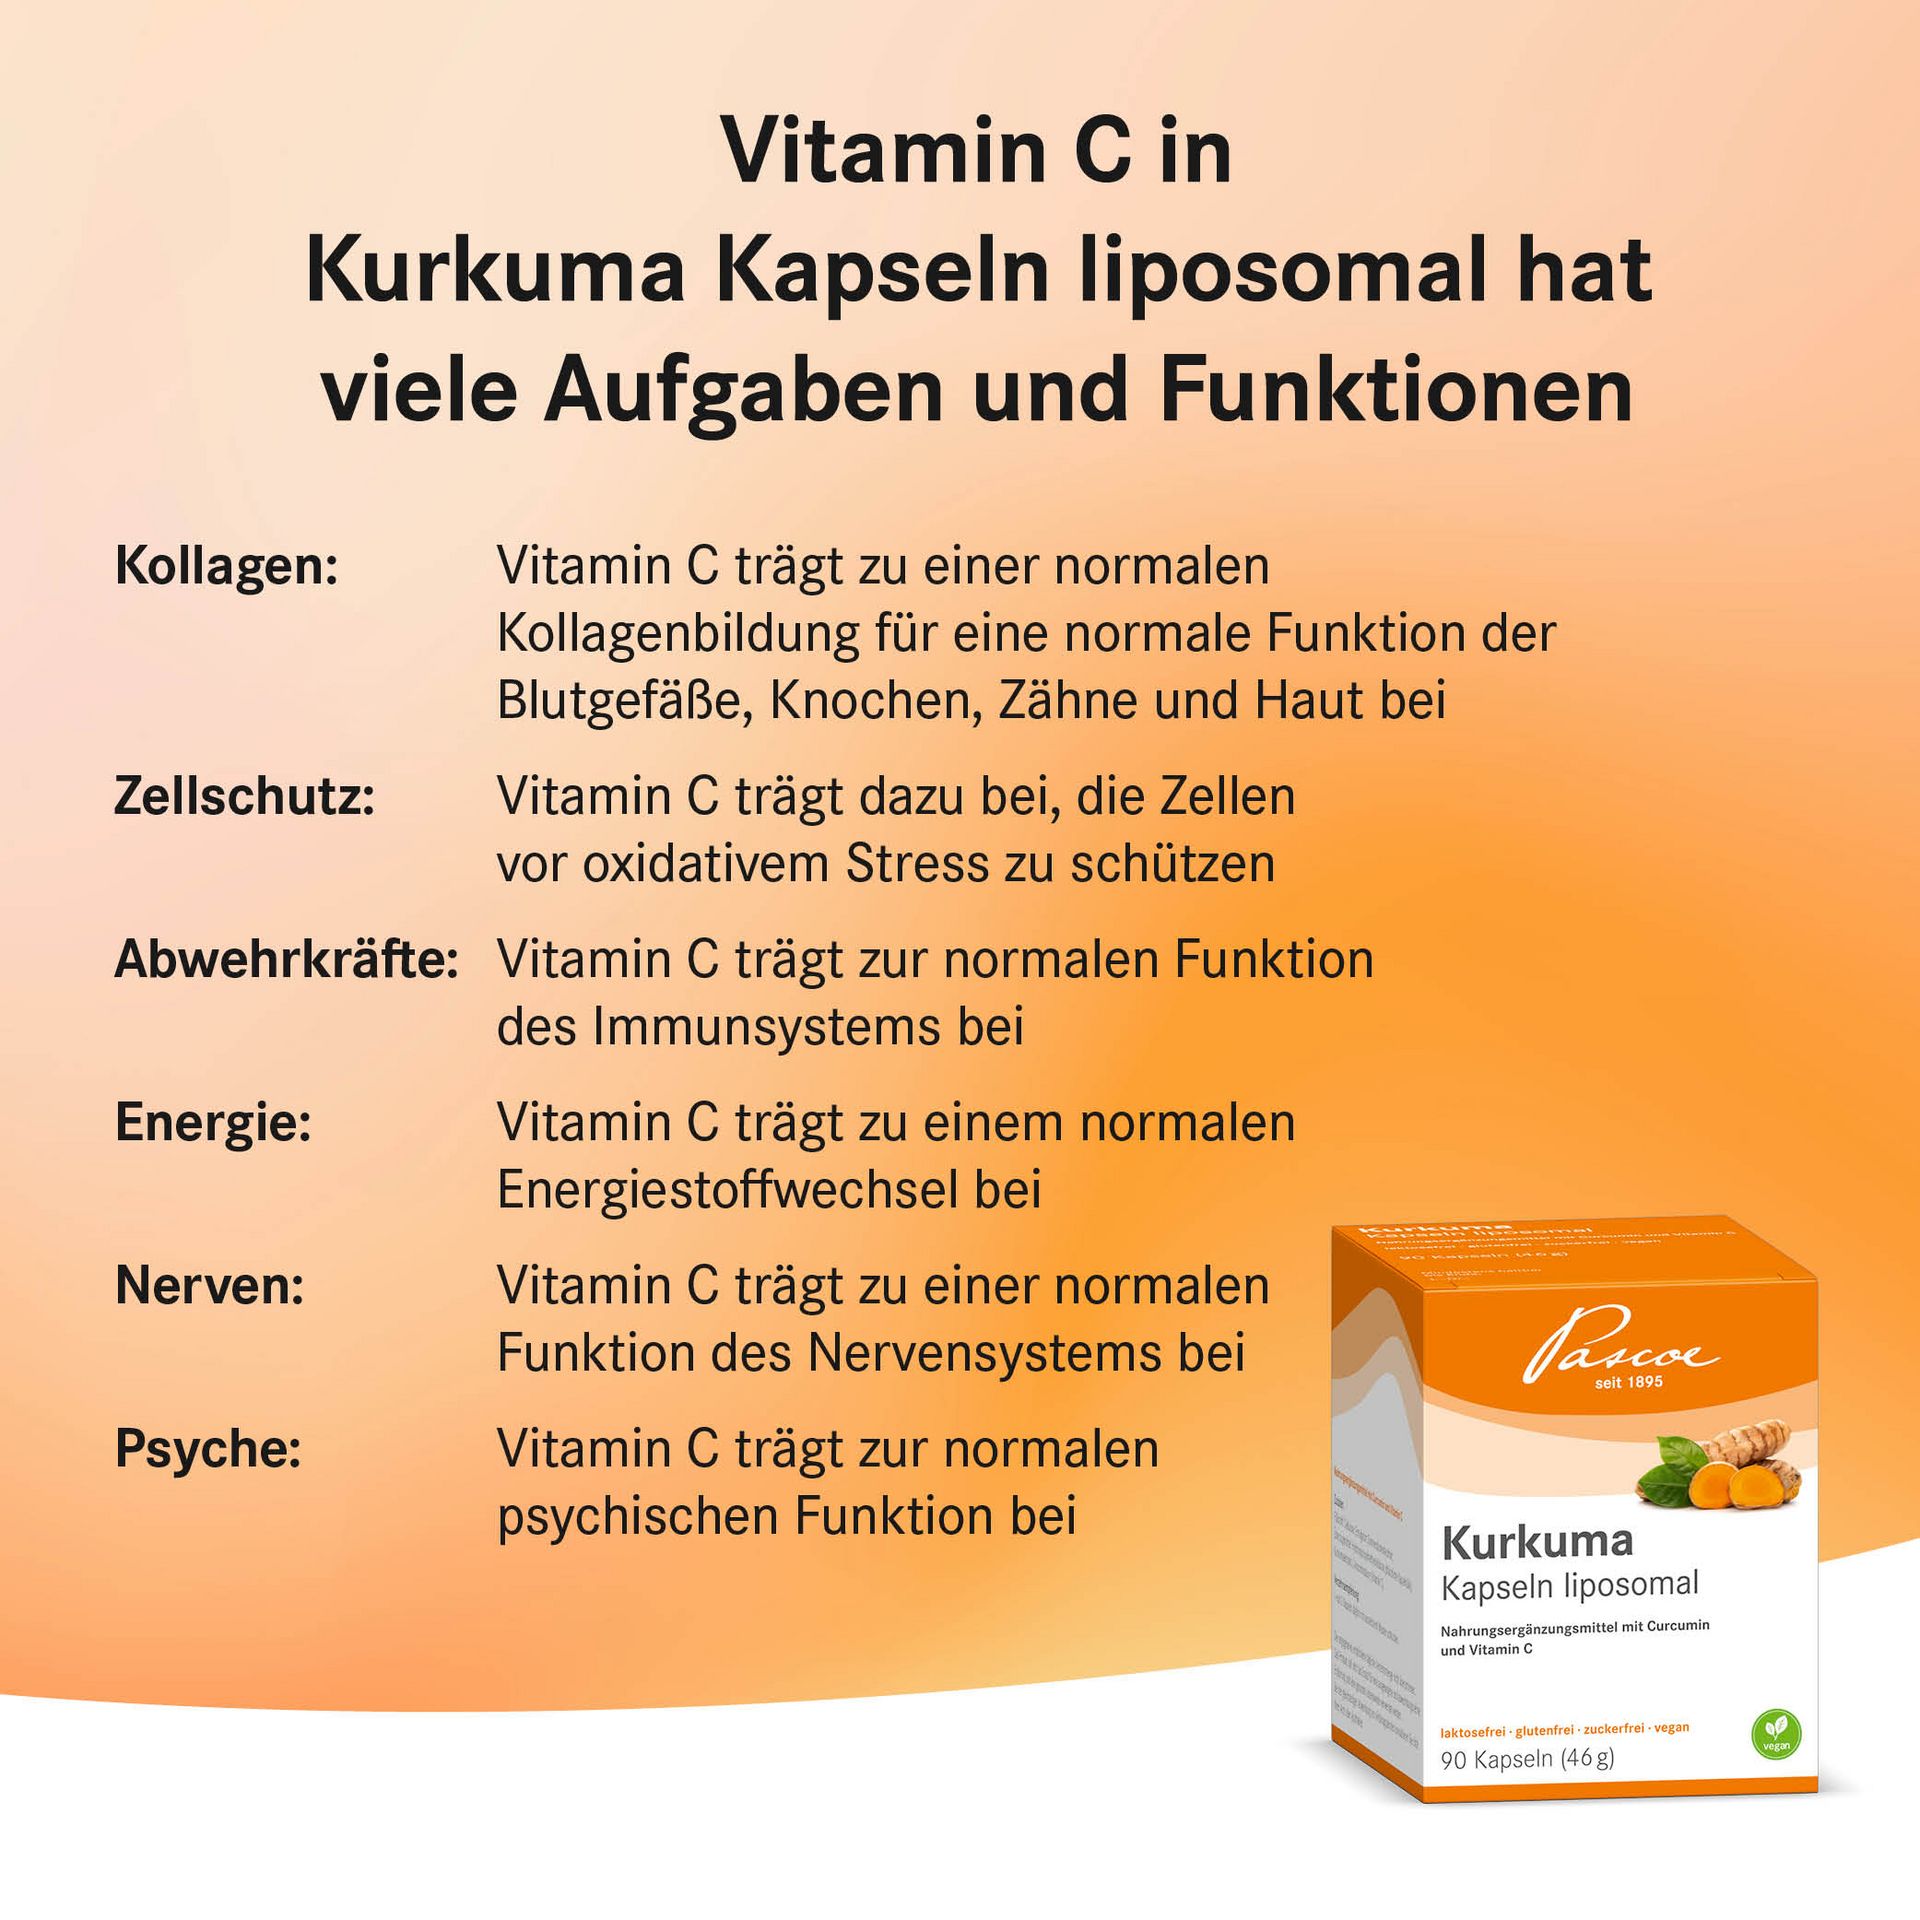 Vitamin C in Kurkuma Kapseln liposomal hat viele Aufgaben und Funktionen